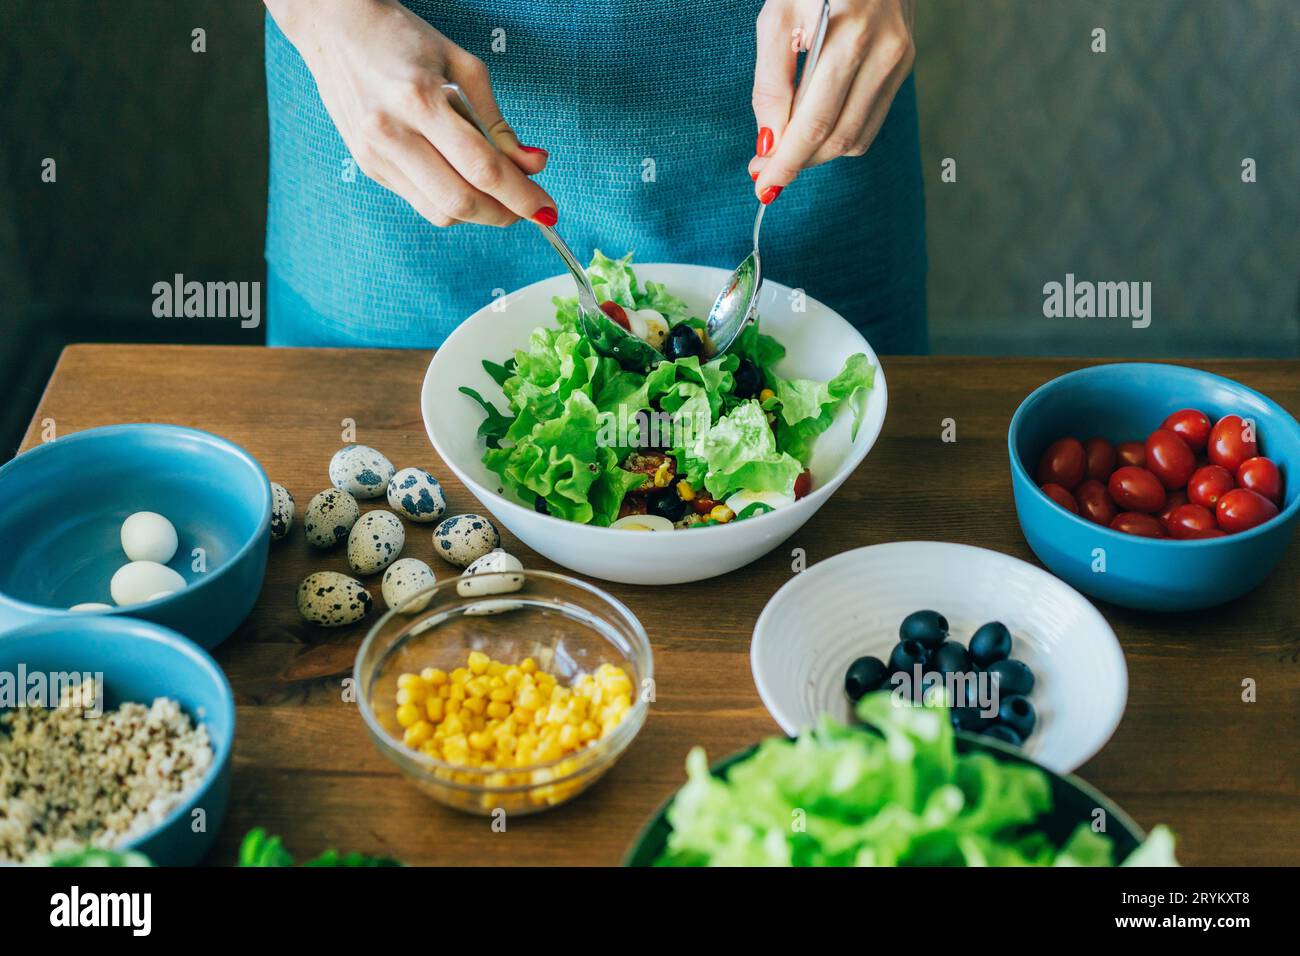 Nahaufnahme einer Frau, die grünen Salat in einer großen Schüssel mischt. Stockfoto